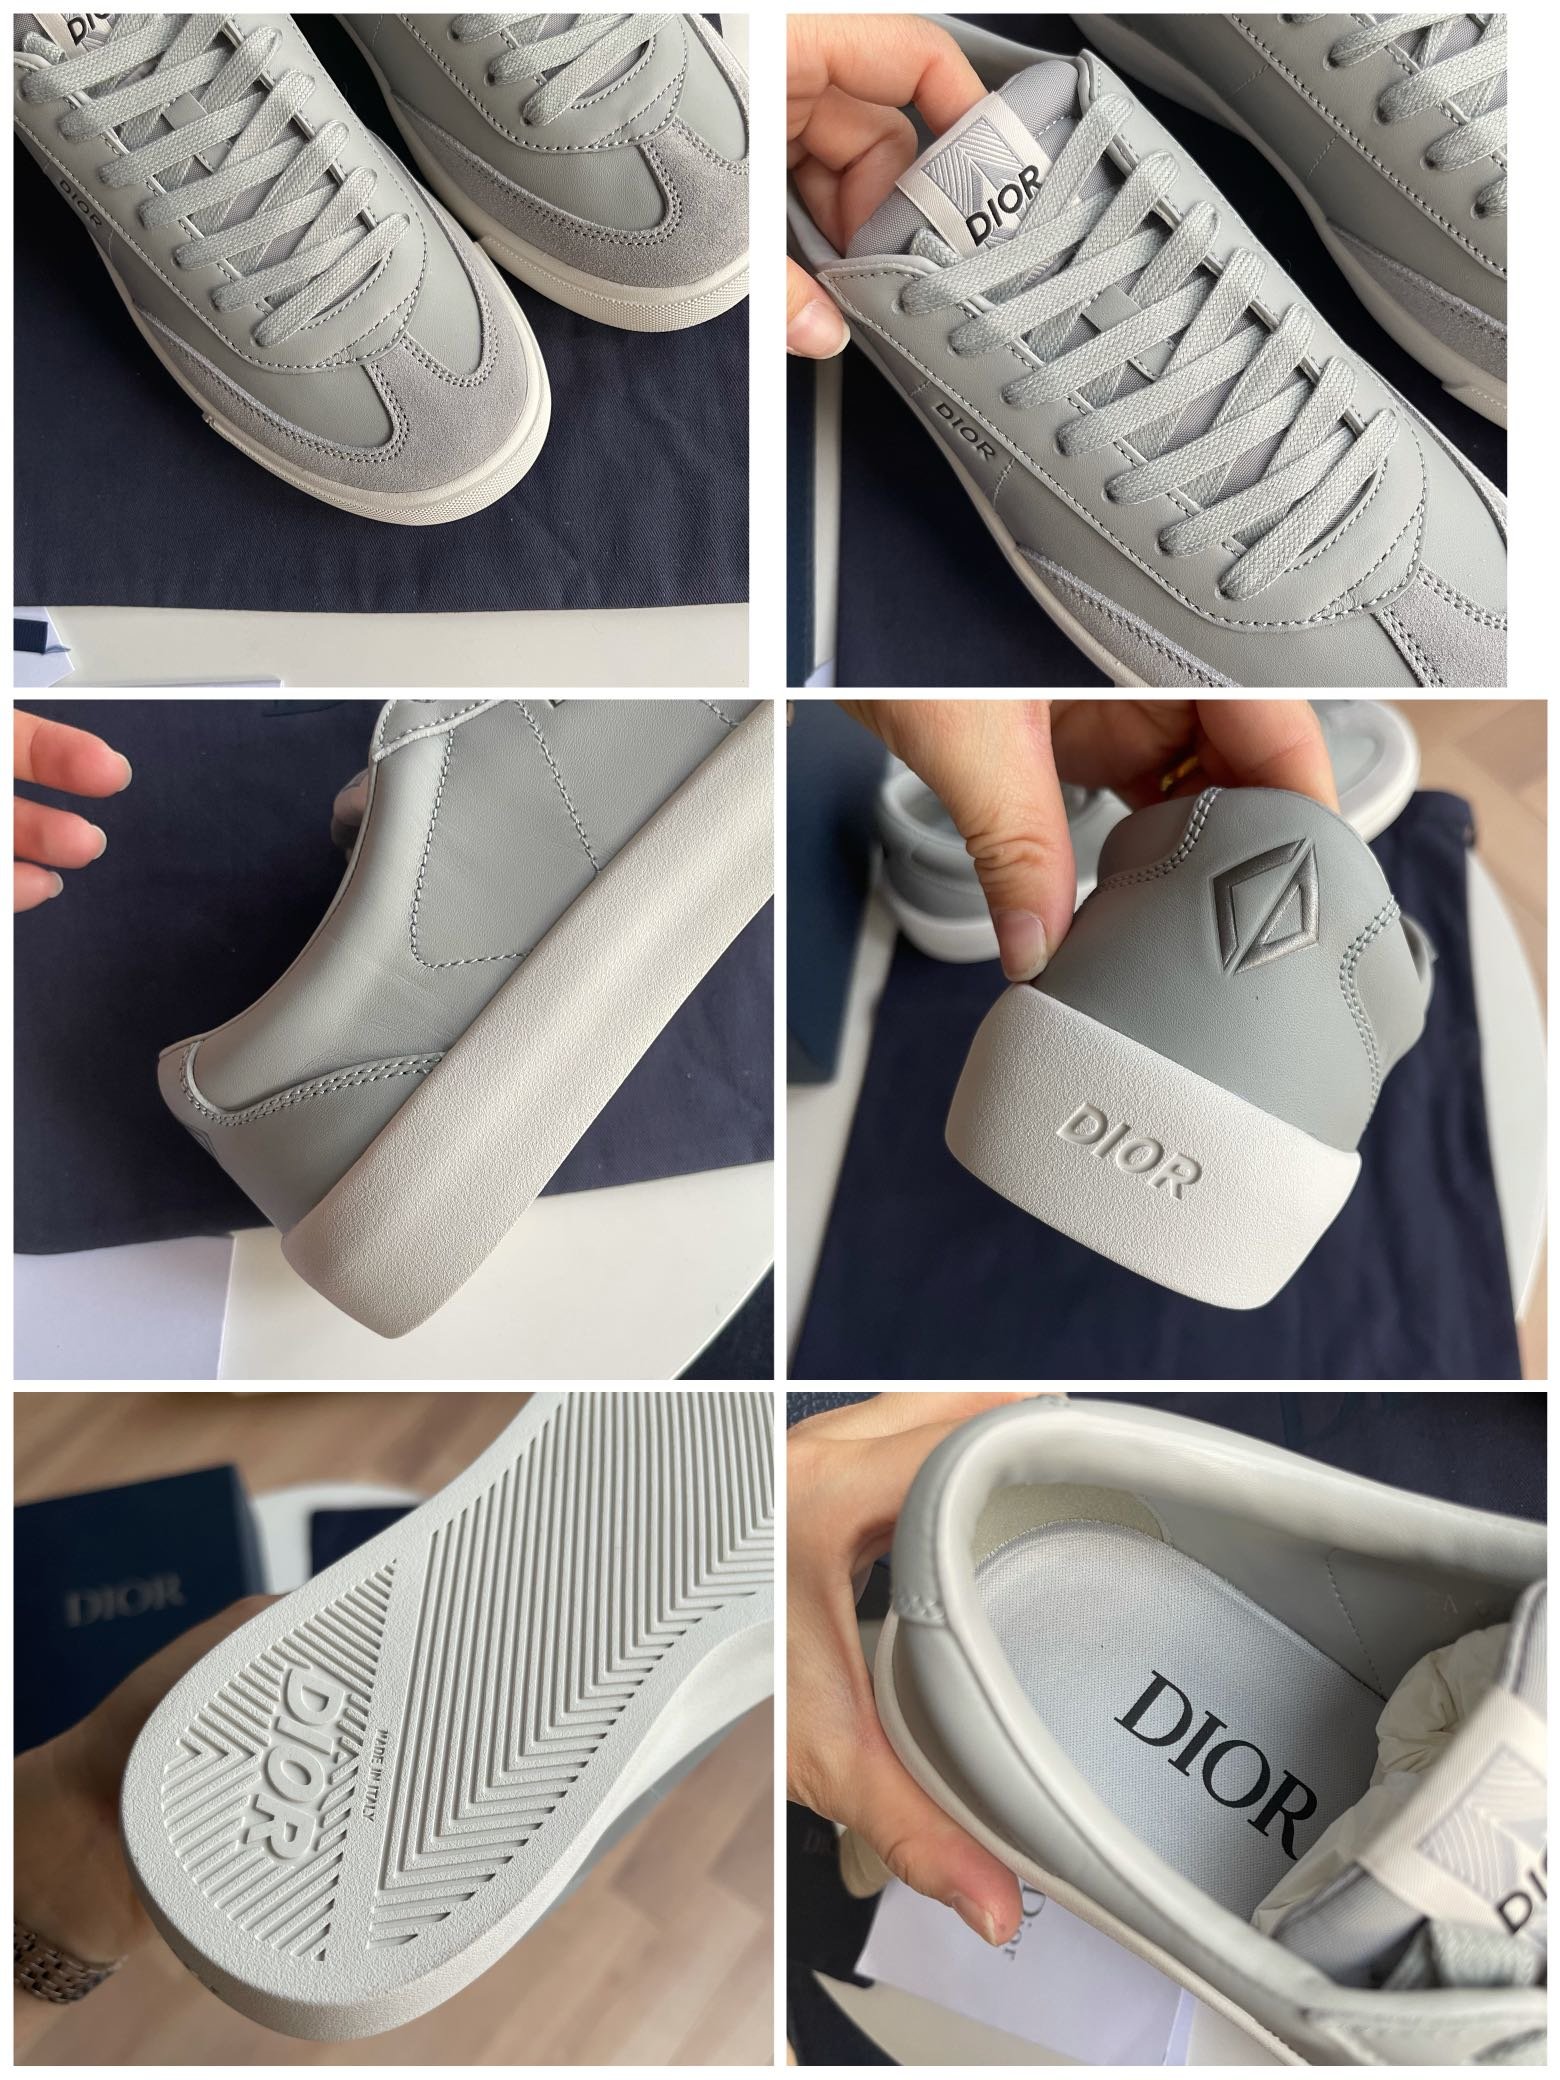 灰色D家新款B101运动鞋本季新款单